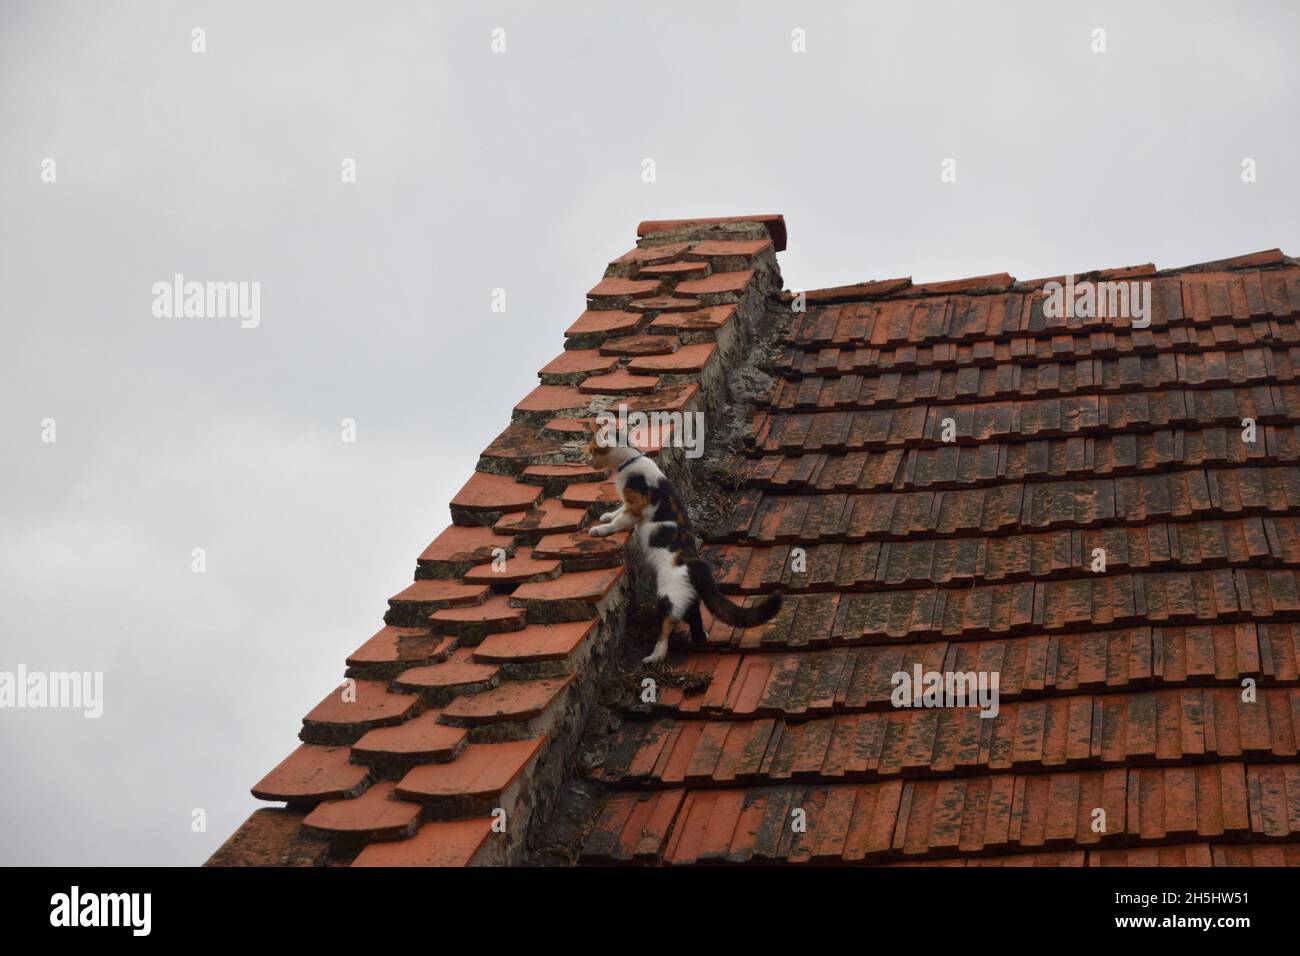 Un gatto pied osserva curiosamente i dintorni dalla parte superiore del tetto. Foto Stock